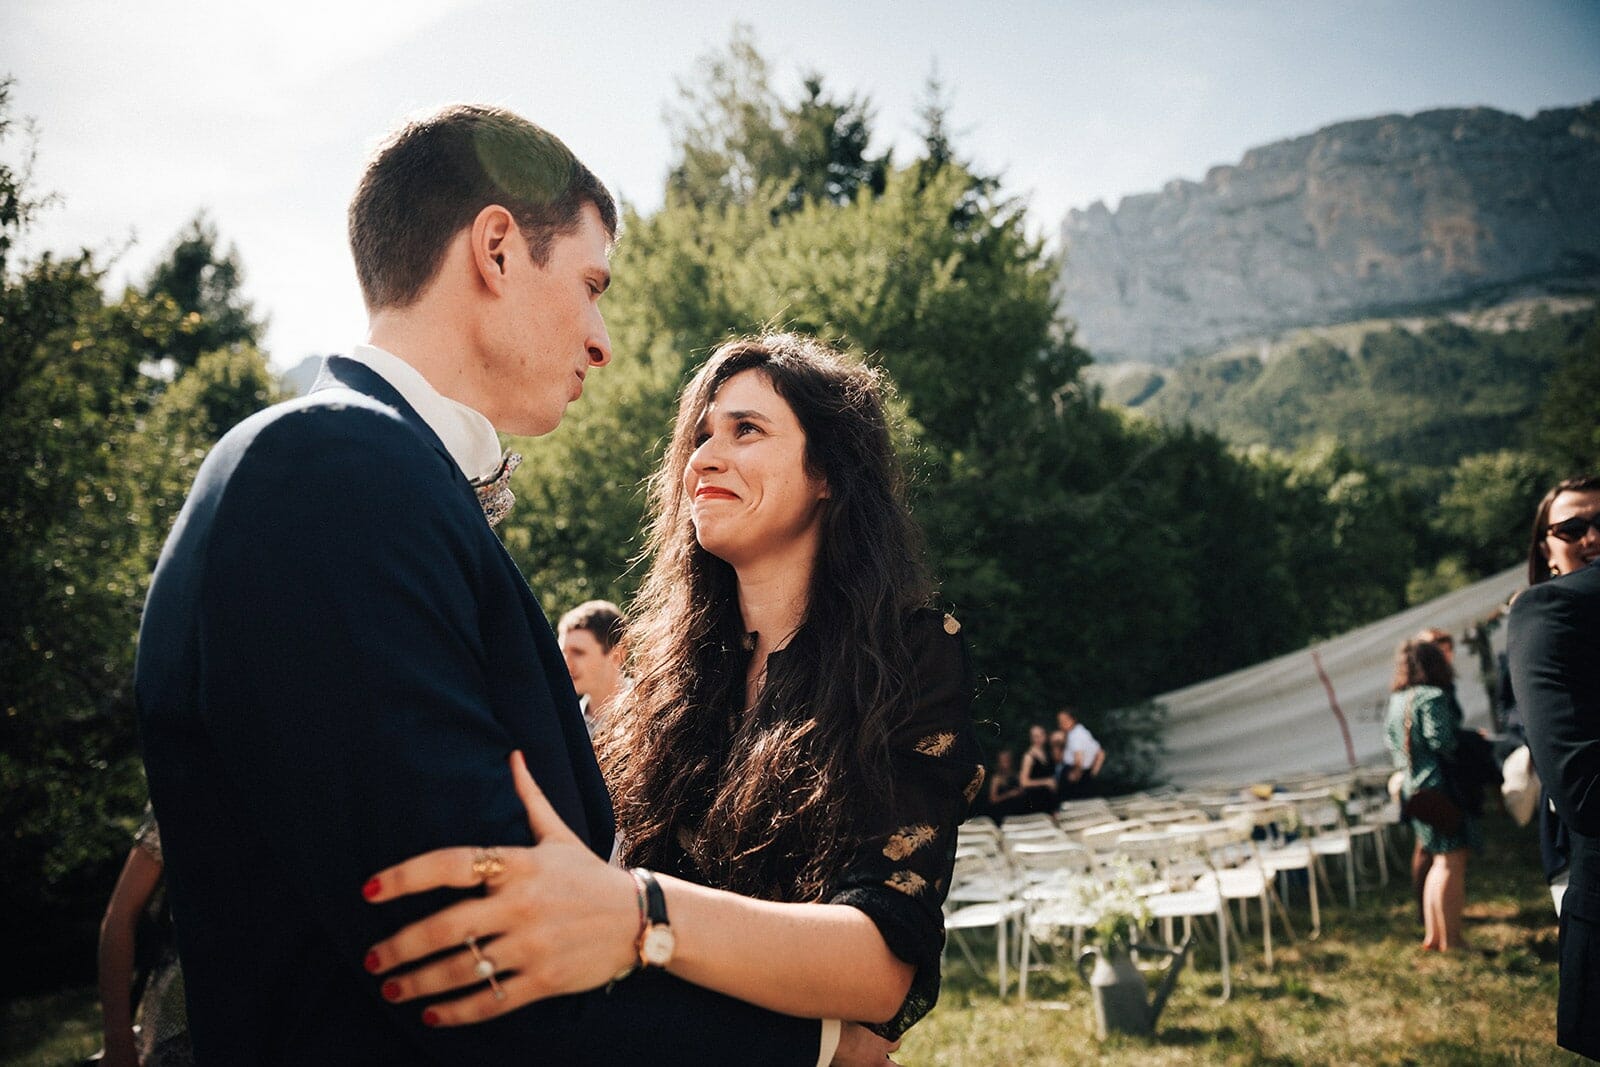 Photographe de mariage Isère Alpes Montagne. Castille ALMA photographe de mariage à la montagne